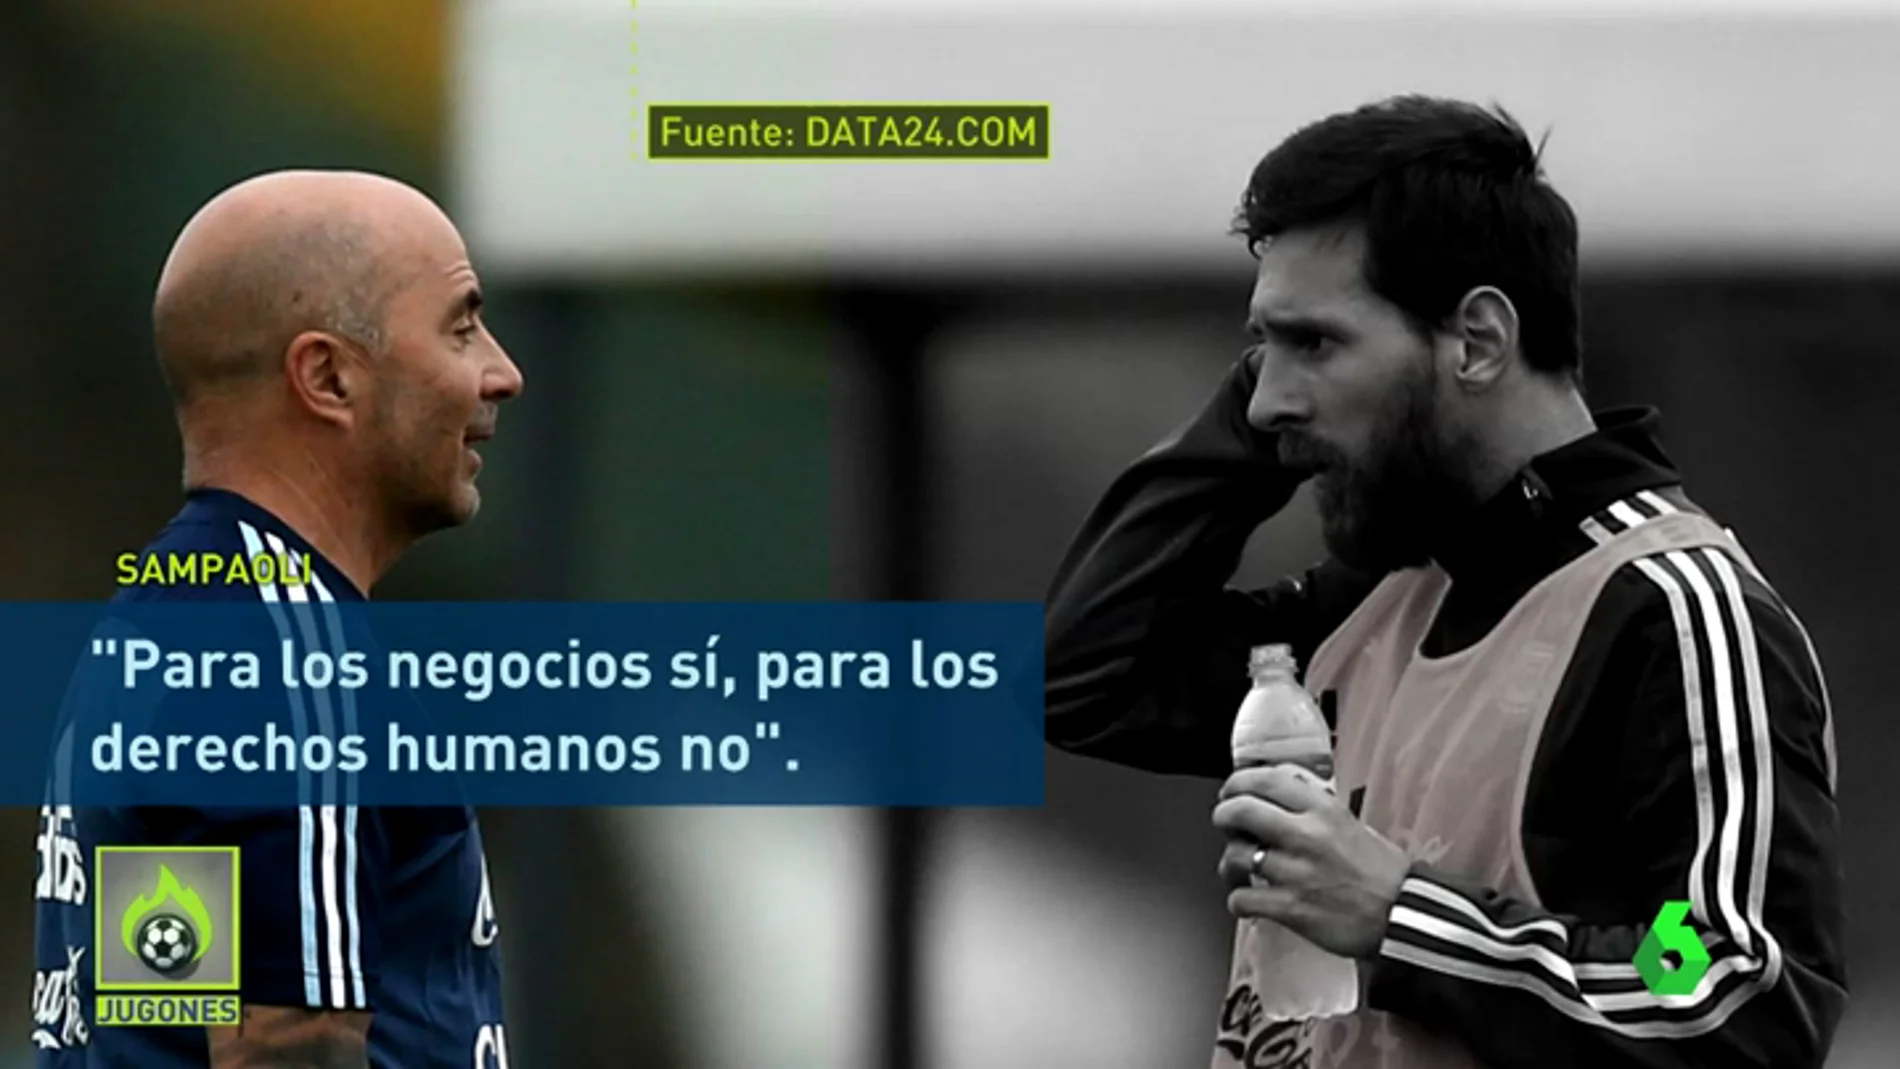 Polémica en Argentina por una supuesta discusión política entre Sampaoli y Messi